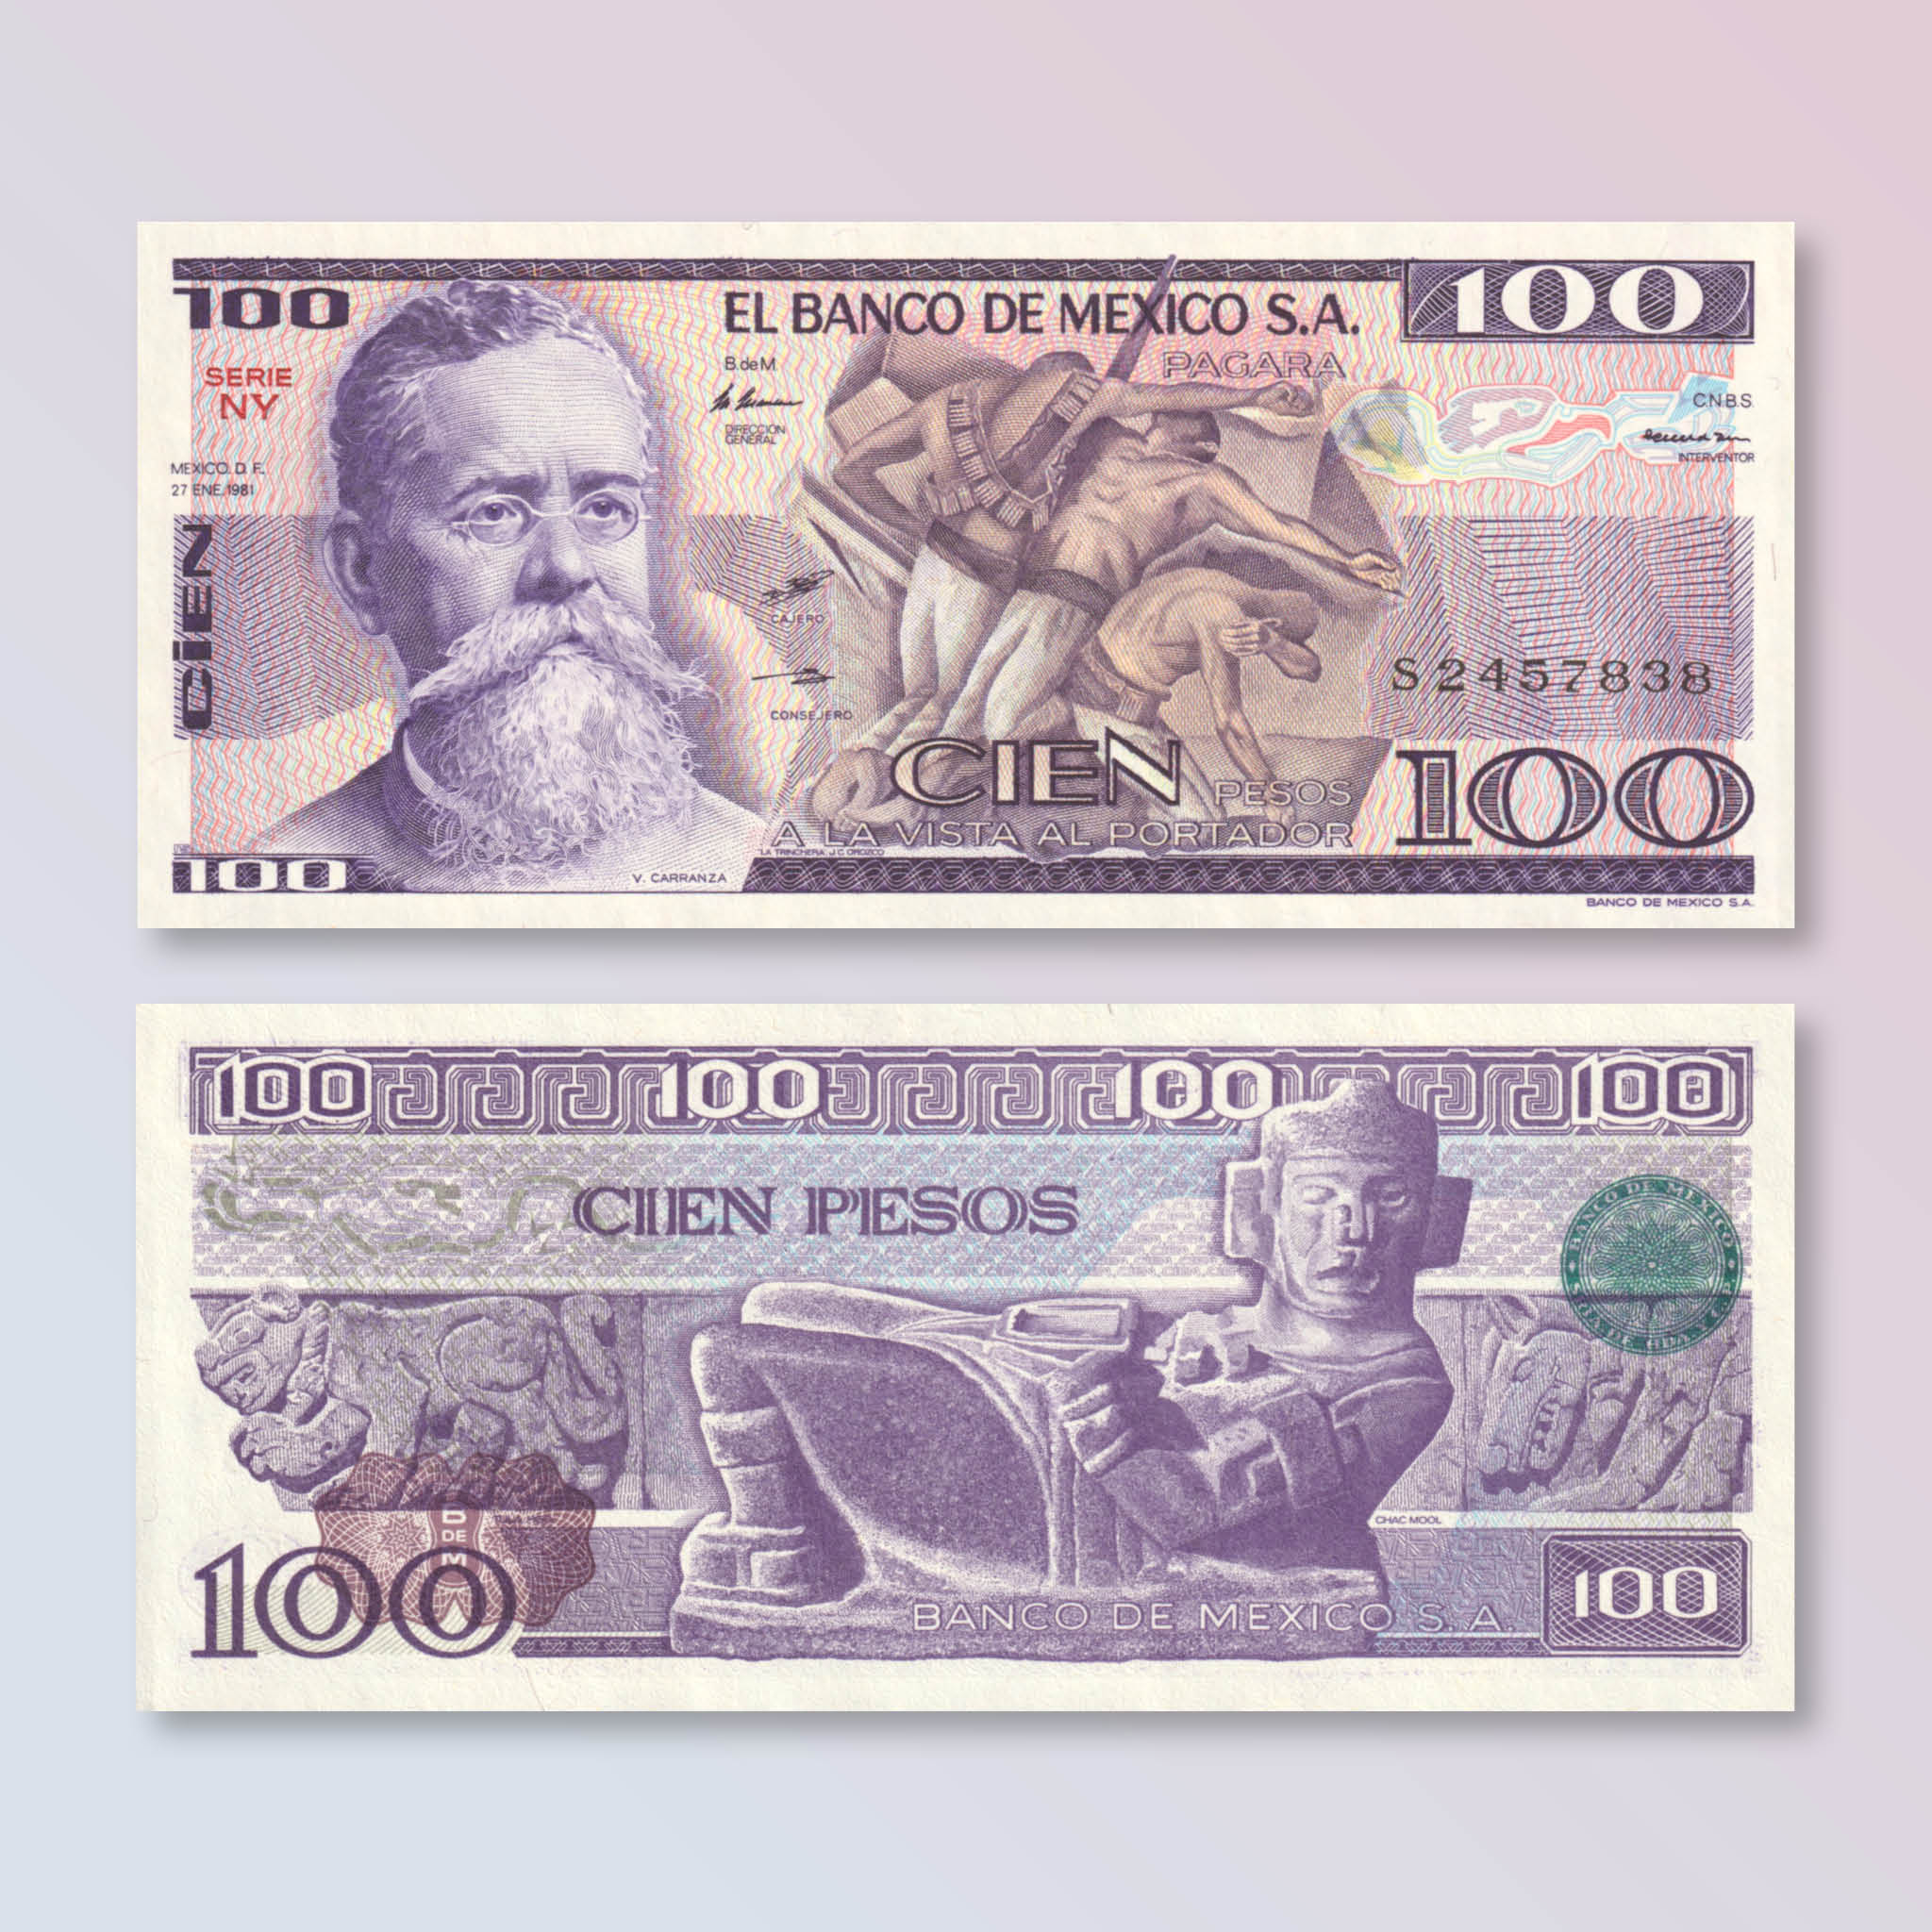 Mexico 100 Pesos, 1981, B650a, P74a, UNC - Robert's World Money - World Banknotes